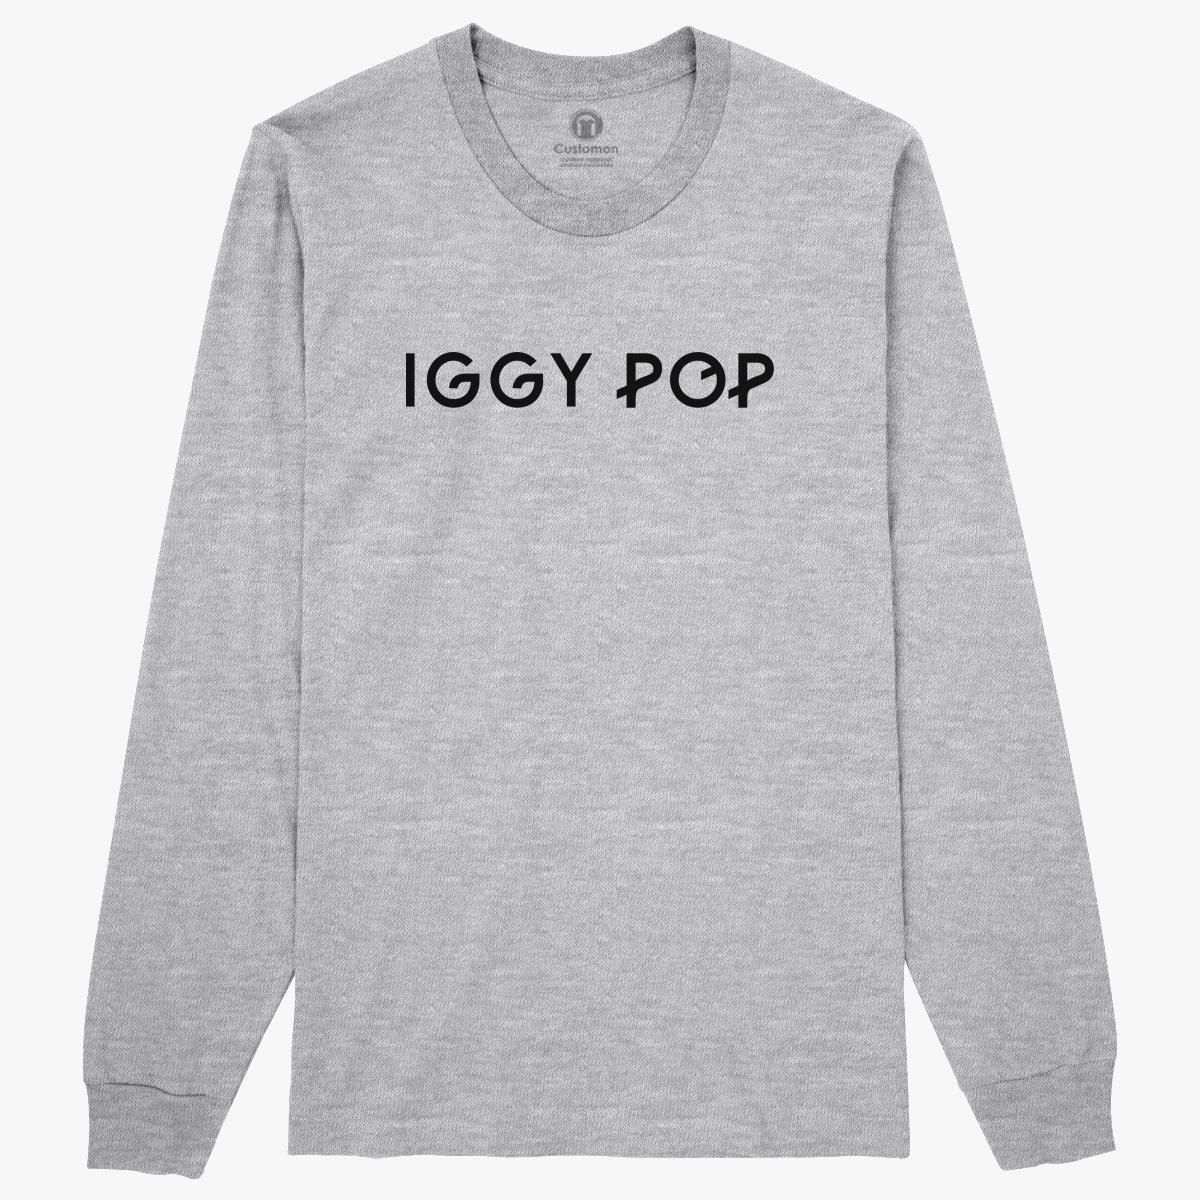 iggy pop shirt